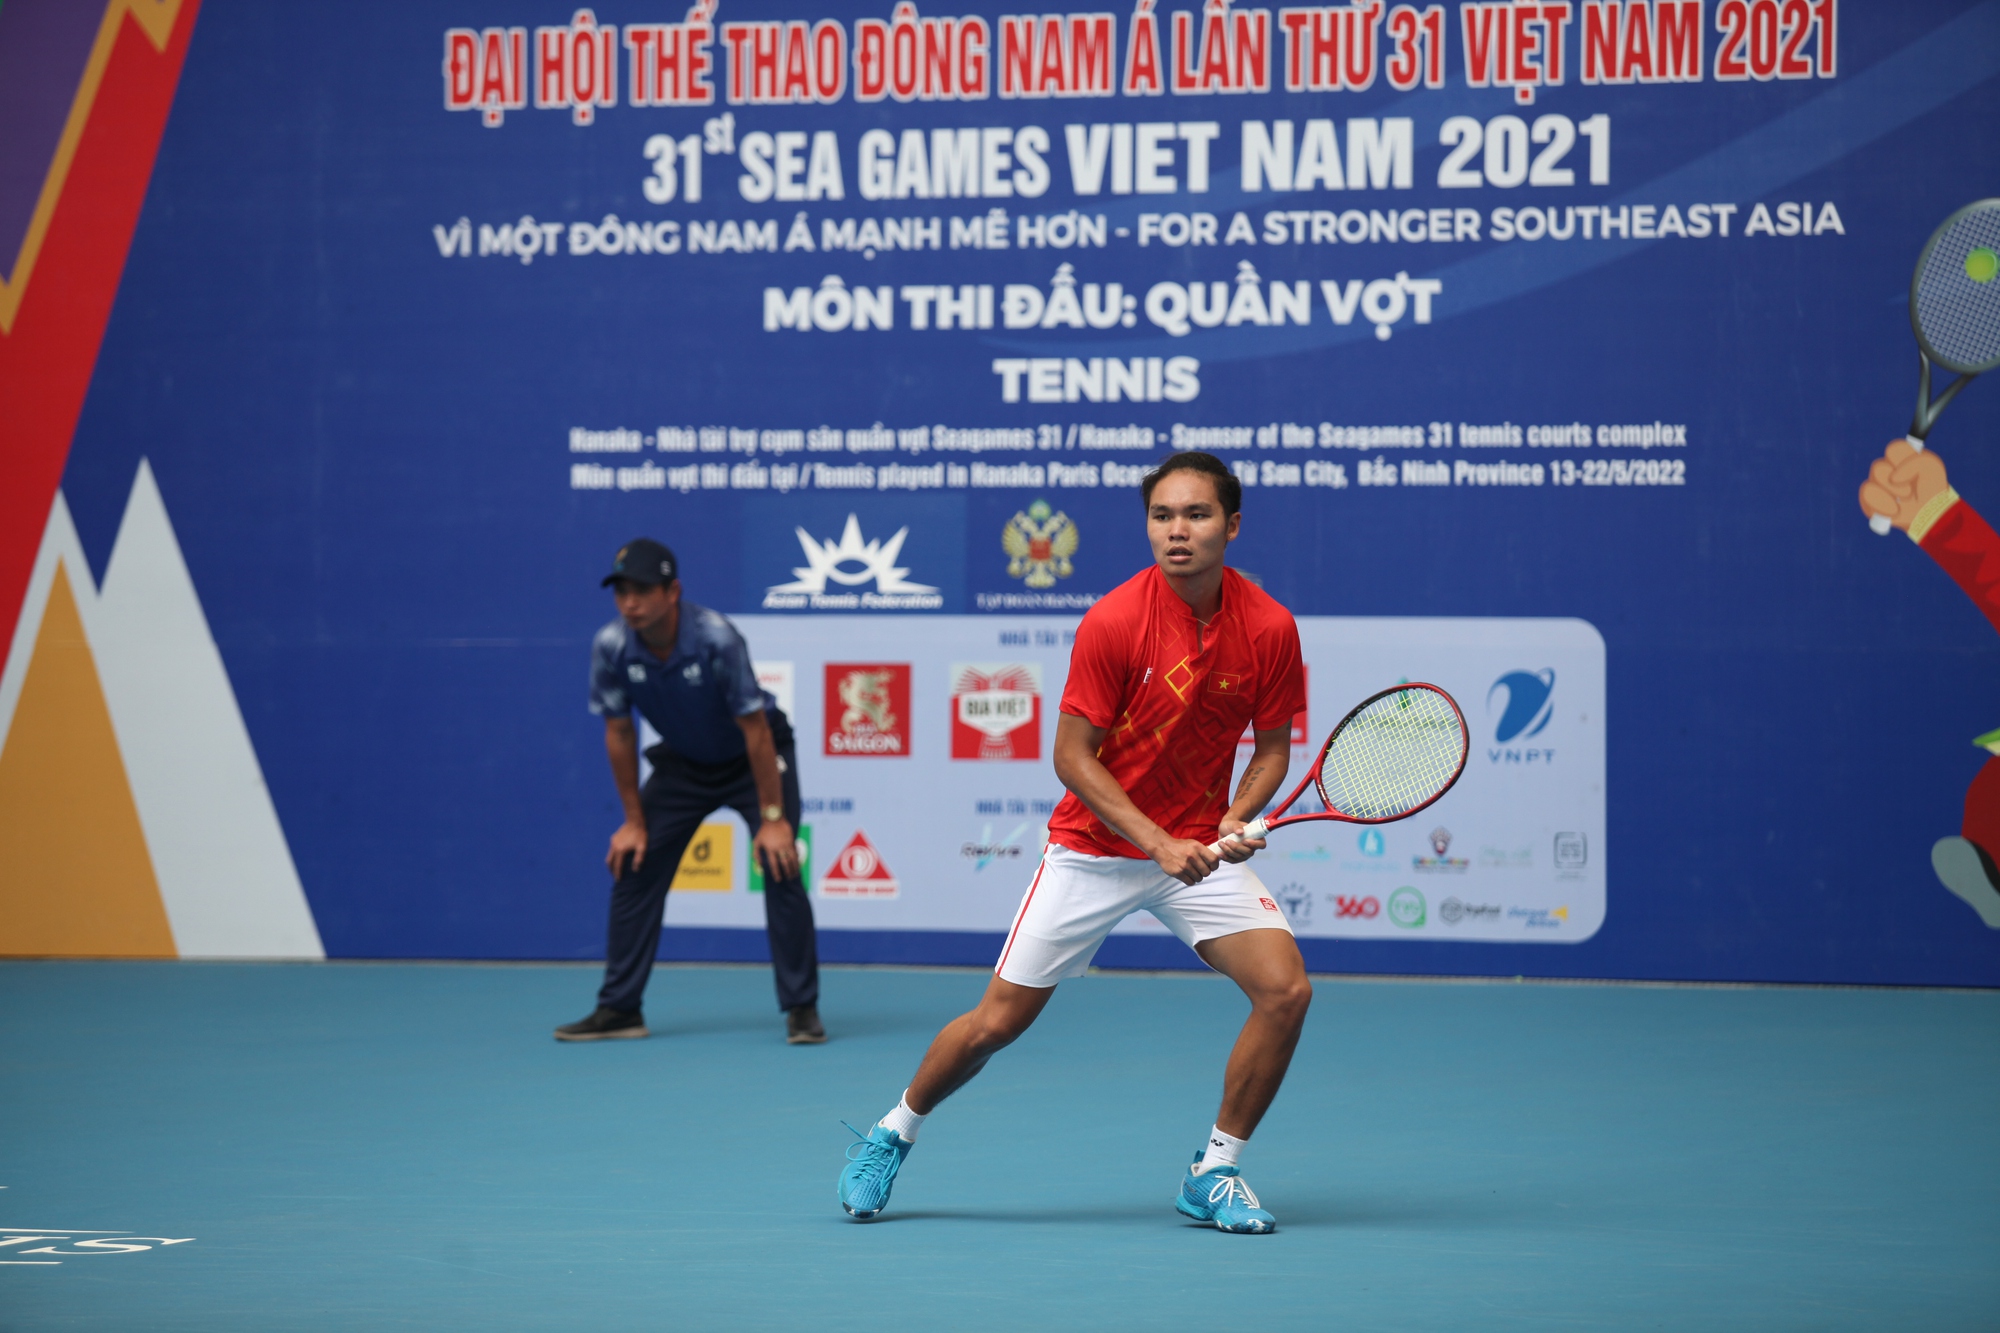 Lý Hoàng Nam, Trịnh Linh Giang giúp uần vợt Việt Nam có ngày thi đấu thành công - Ảnh 2.